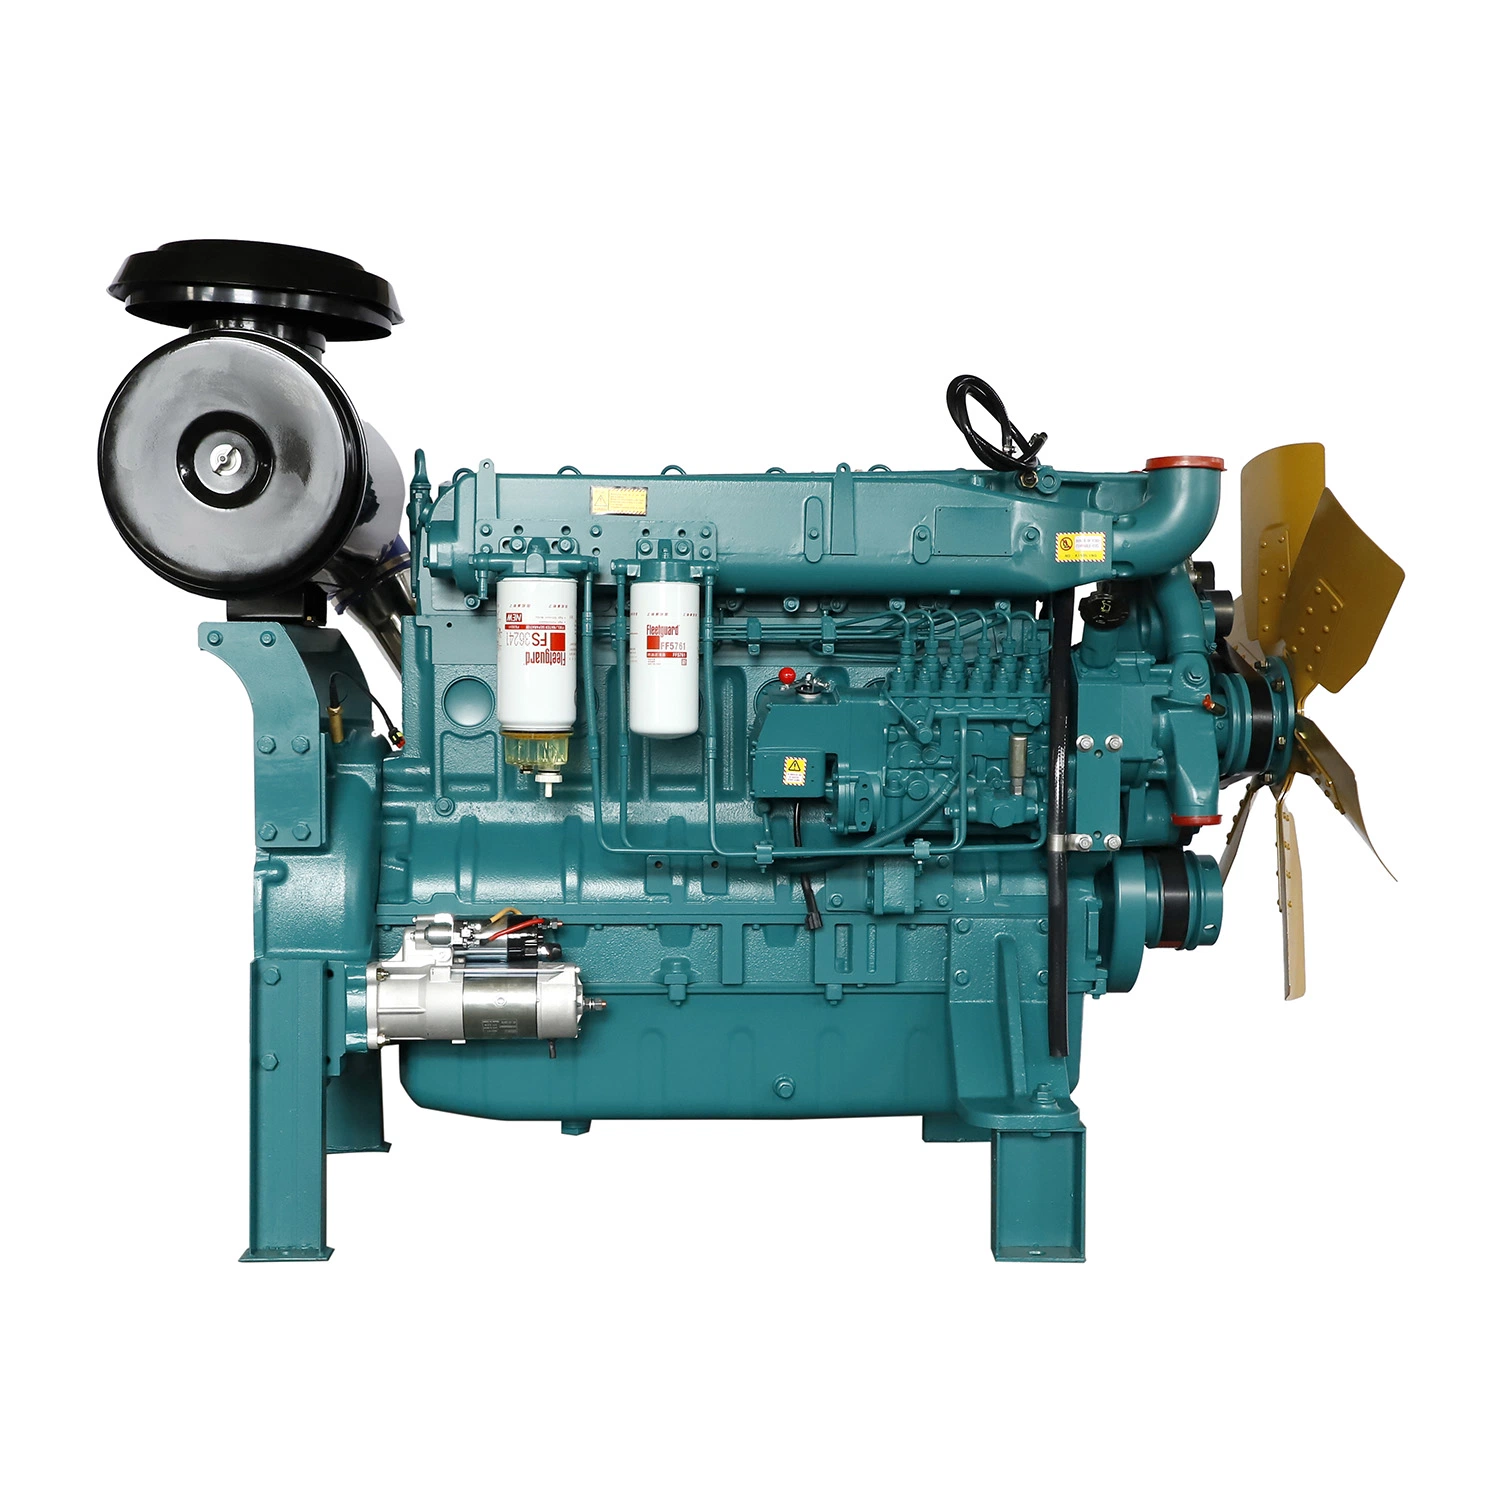 محرك ديزل مخصص مبرد بالمياه بالجملة مصنع / ست أسطوانات محرك ديزل يستخدم لمجموعات مولدات الطاقة بسعر تنافسي